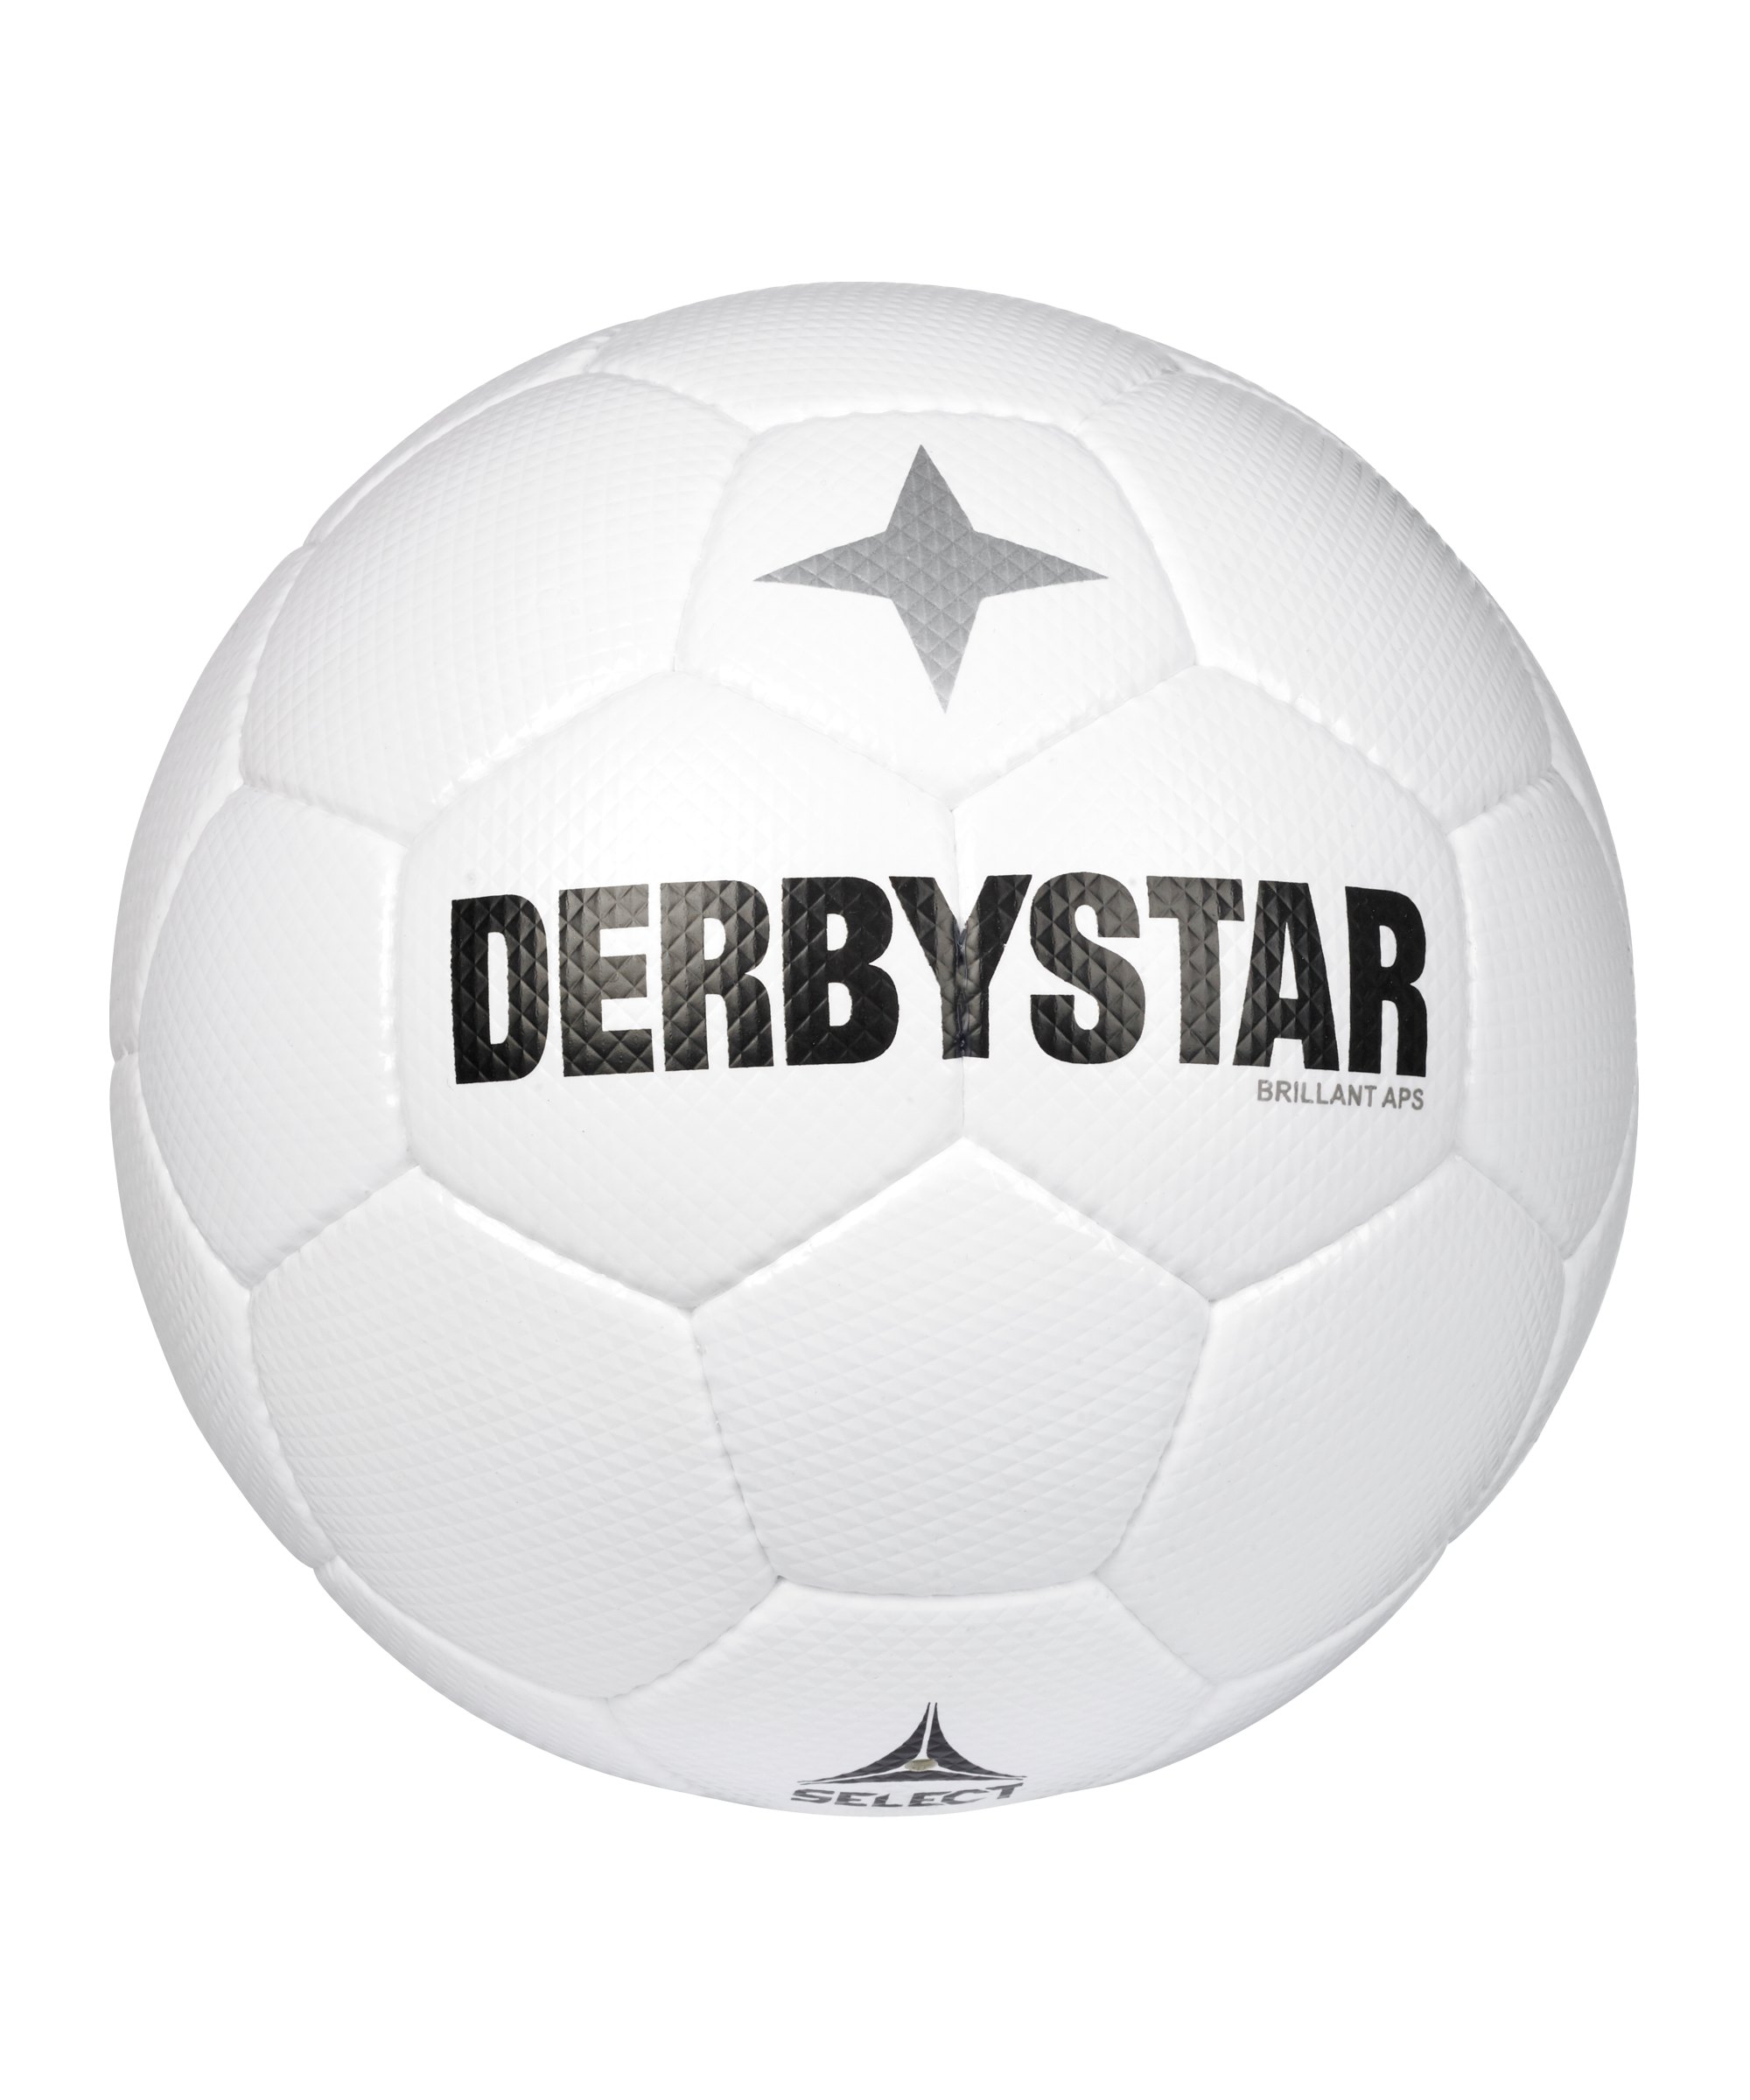 Derbystar Brillant APS Classic v22 Spielball F100 - weiss